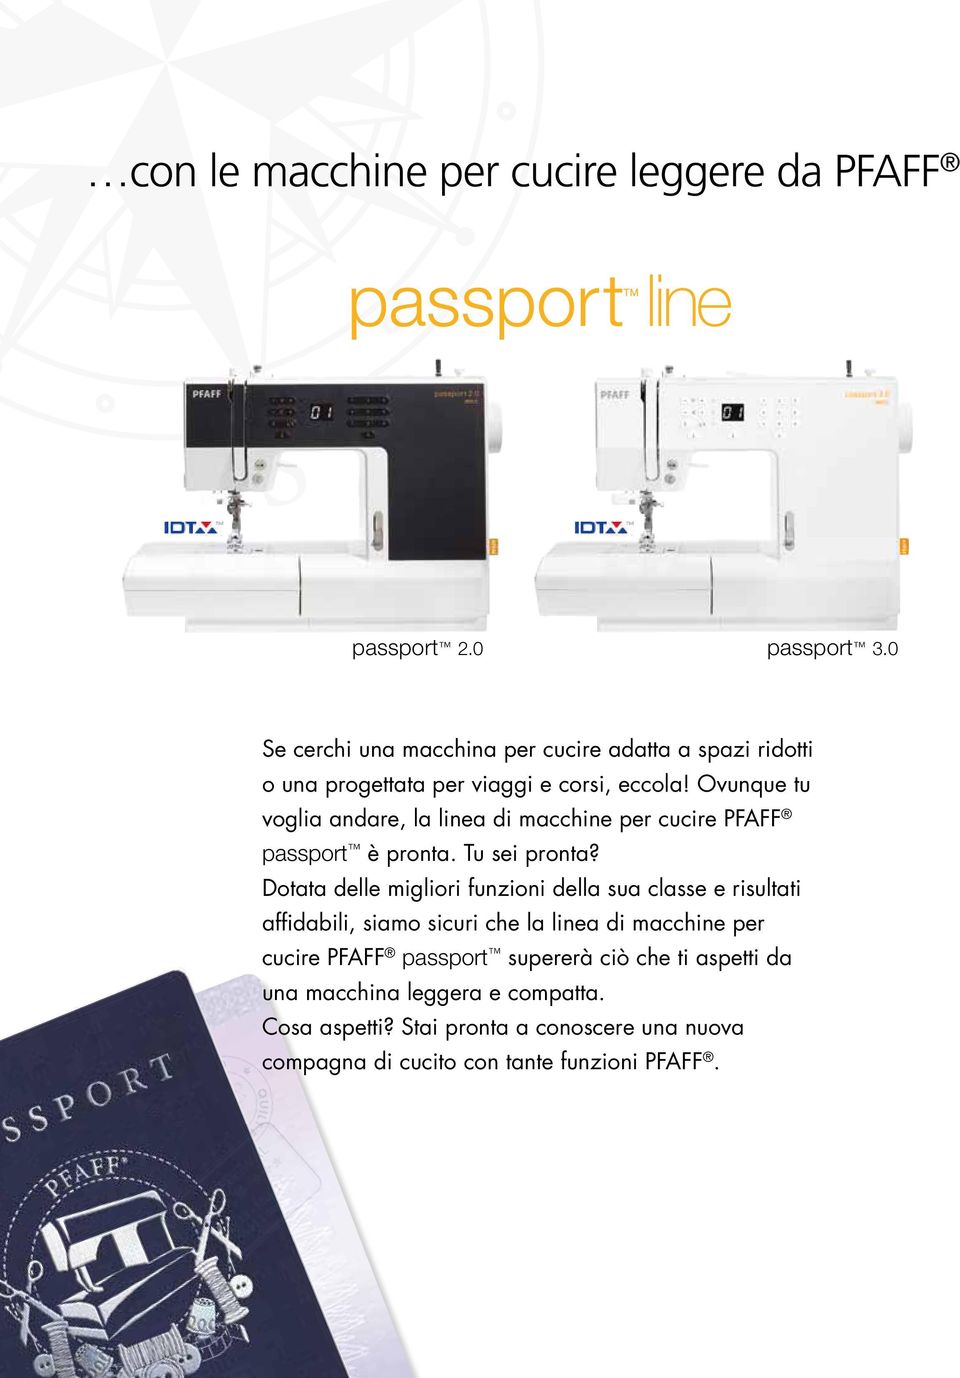 Ovunque tu voglia andare, la linea di macchine per cucire PFAFF passport è pronta. Tu sei pronta?